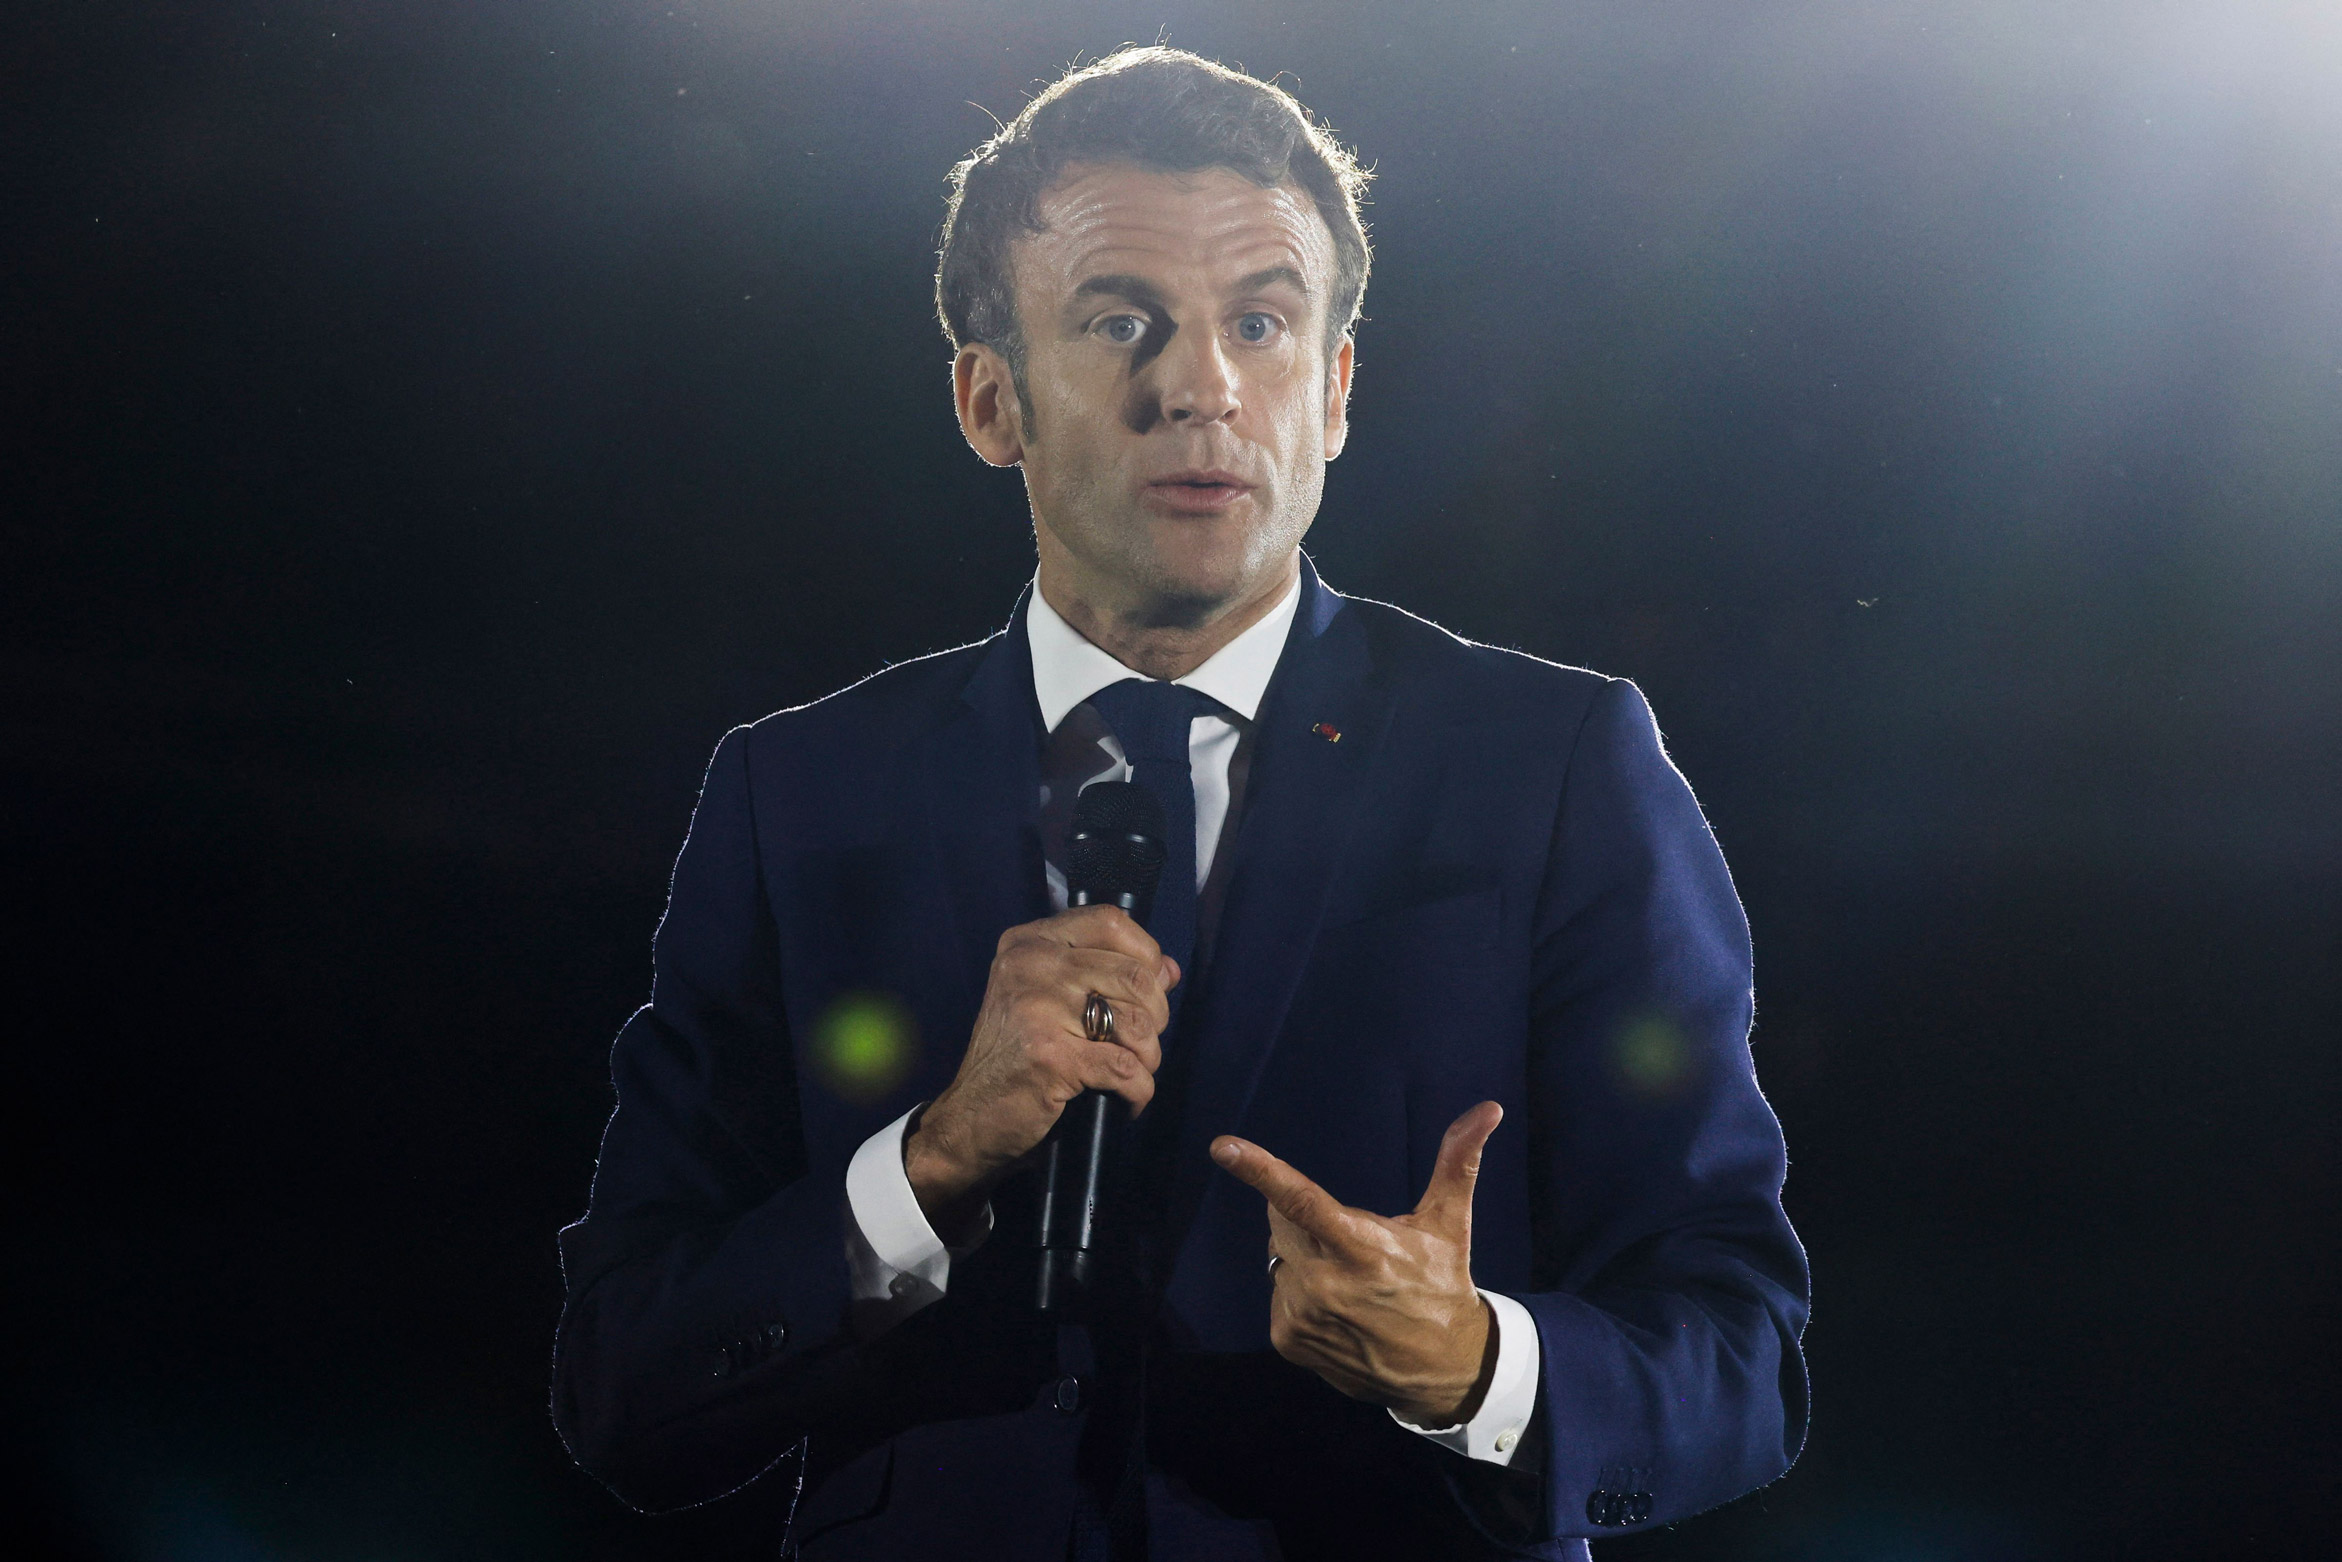 O presidente francês Emmanuel Macron discursa durante campanha eleitoral em Estrasburgo, França, em 12 de abril.